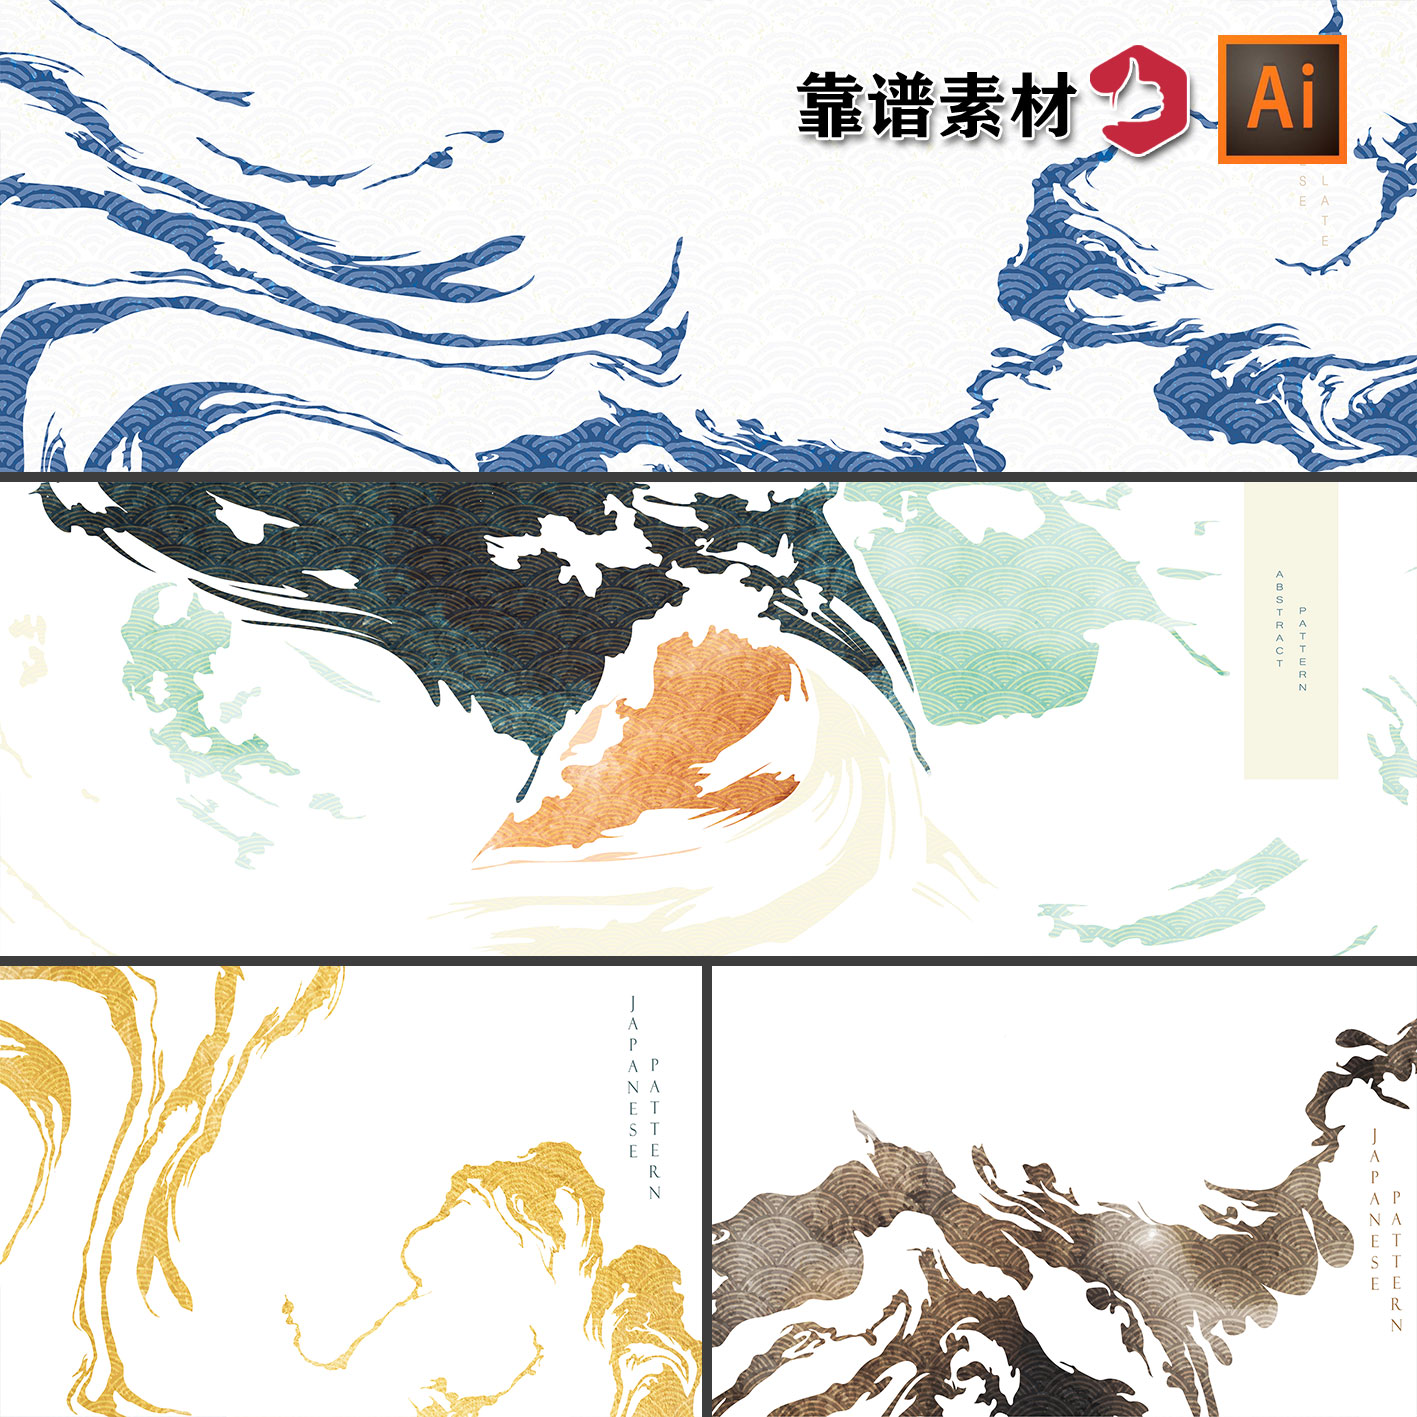 古典中国风日式大气禅意水墨线条艺术抽象装饰画AI矢量设计素材